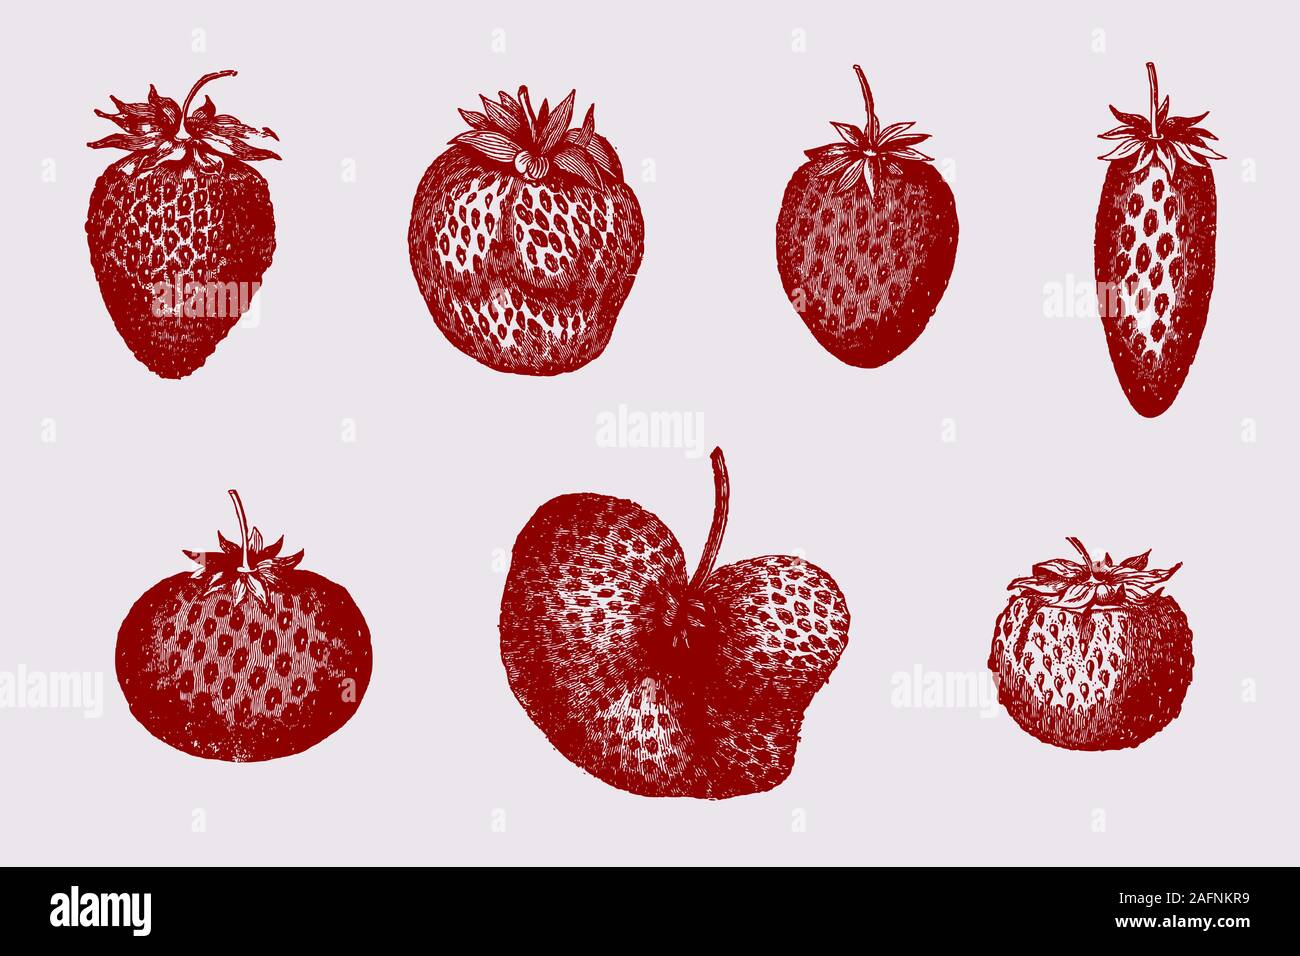 Der Garten Erdbeere Sorten in verschiedenen Formen, nach historischen Abbildungen aus dem 19. Jahrhundert Stock Vektor